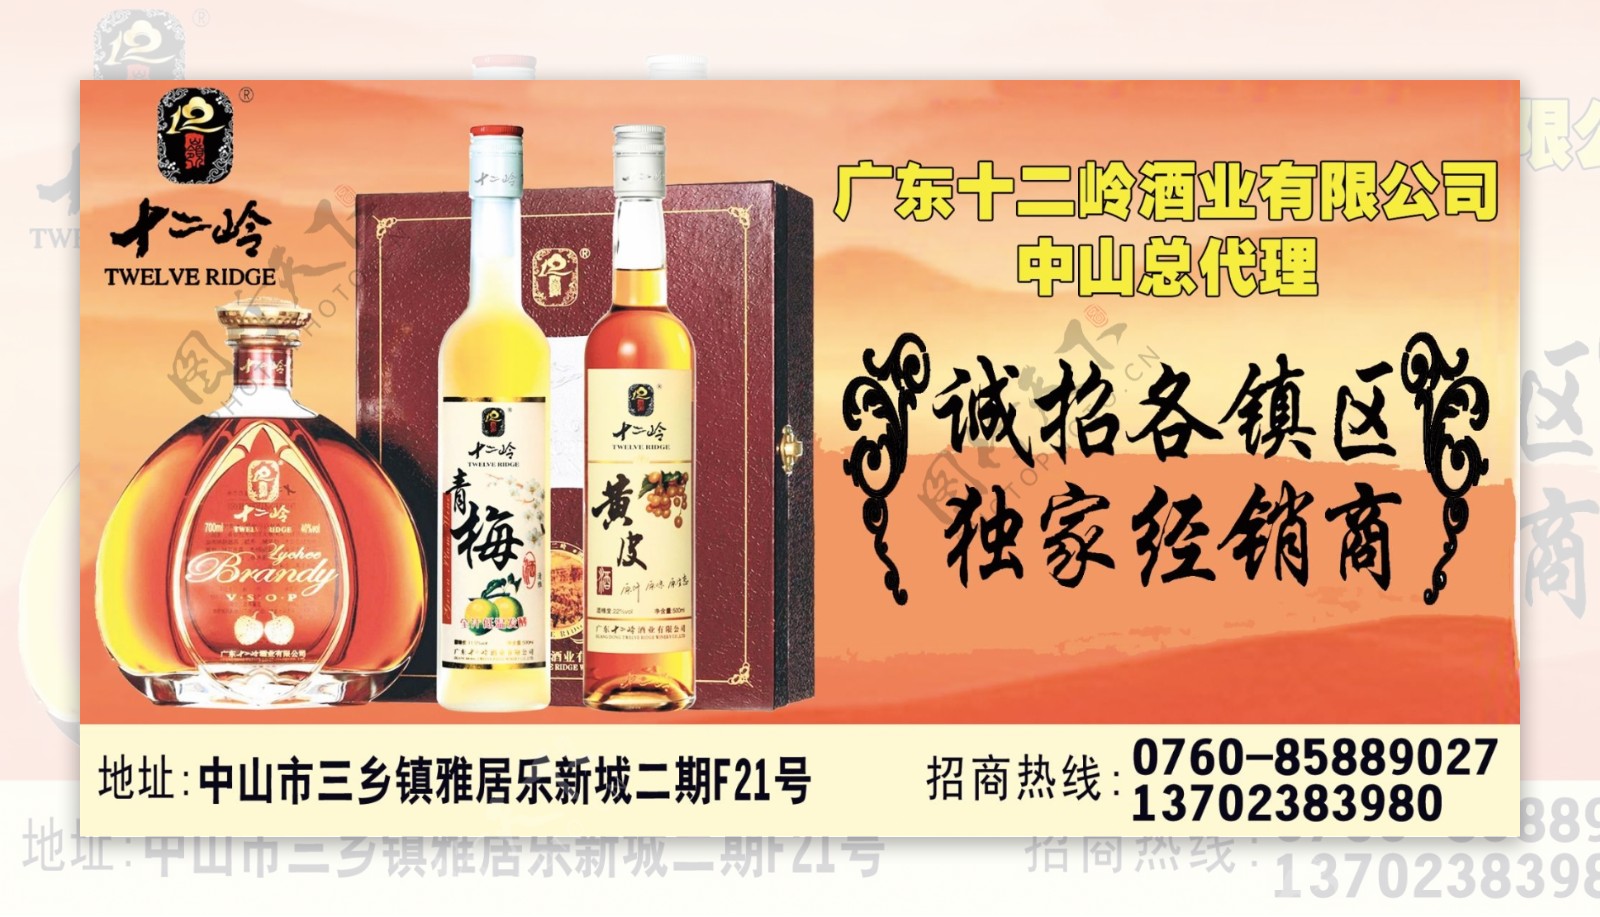 十二岭酒业招商宣传广告图片